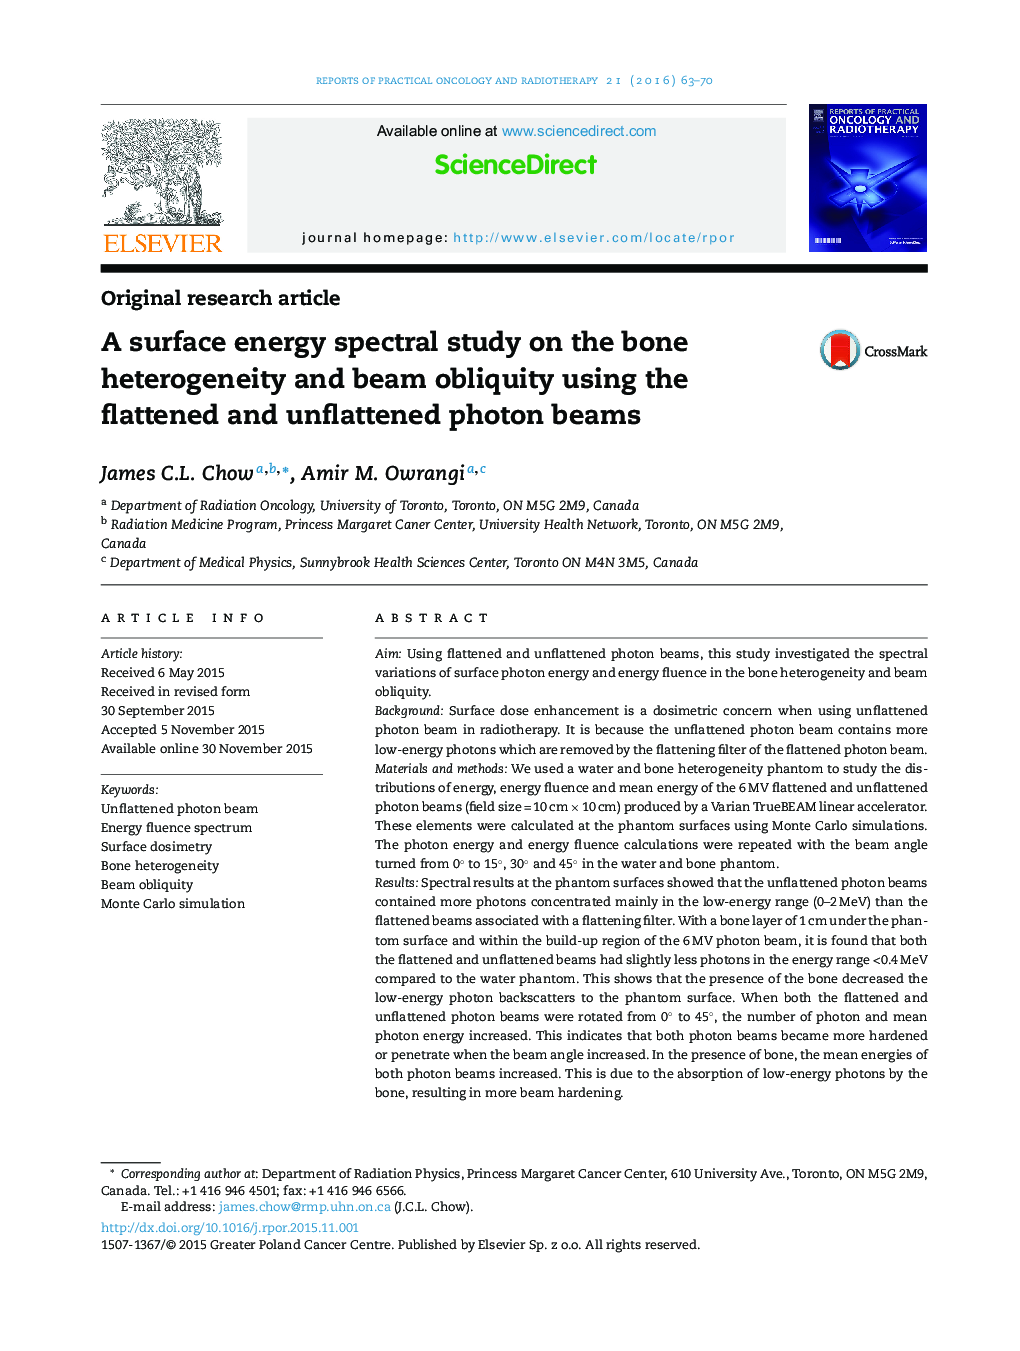 یک مطالعه طیفی انرژی سطح بر روی ناهمگونی استخوان و تک لایه با استفاده از پرتوهای فوتون مسطح و غیرمسطح